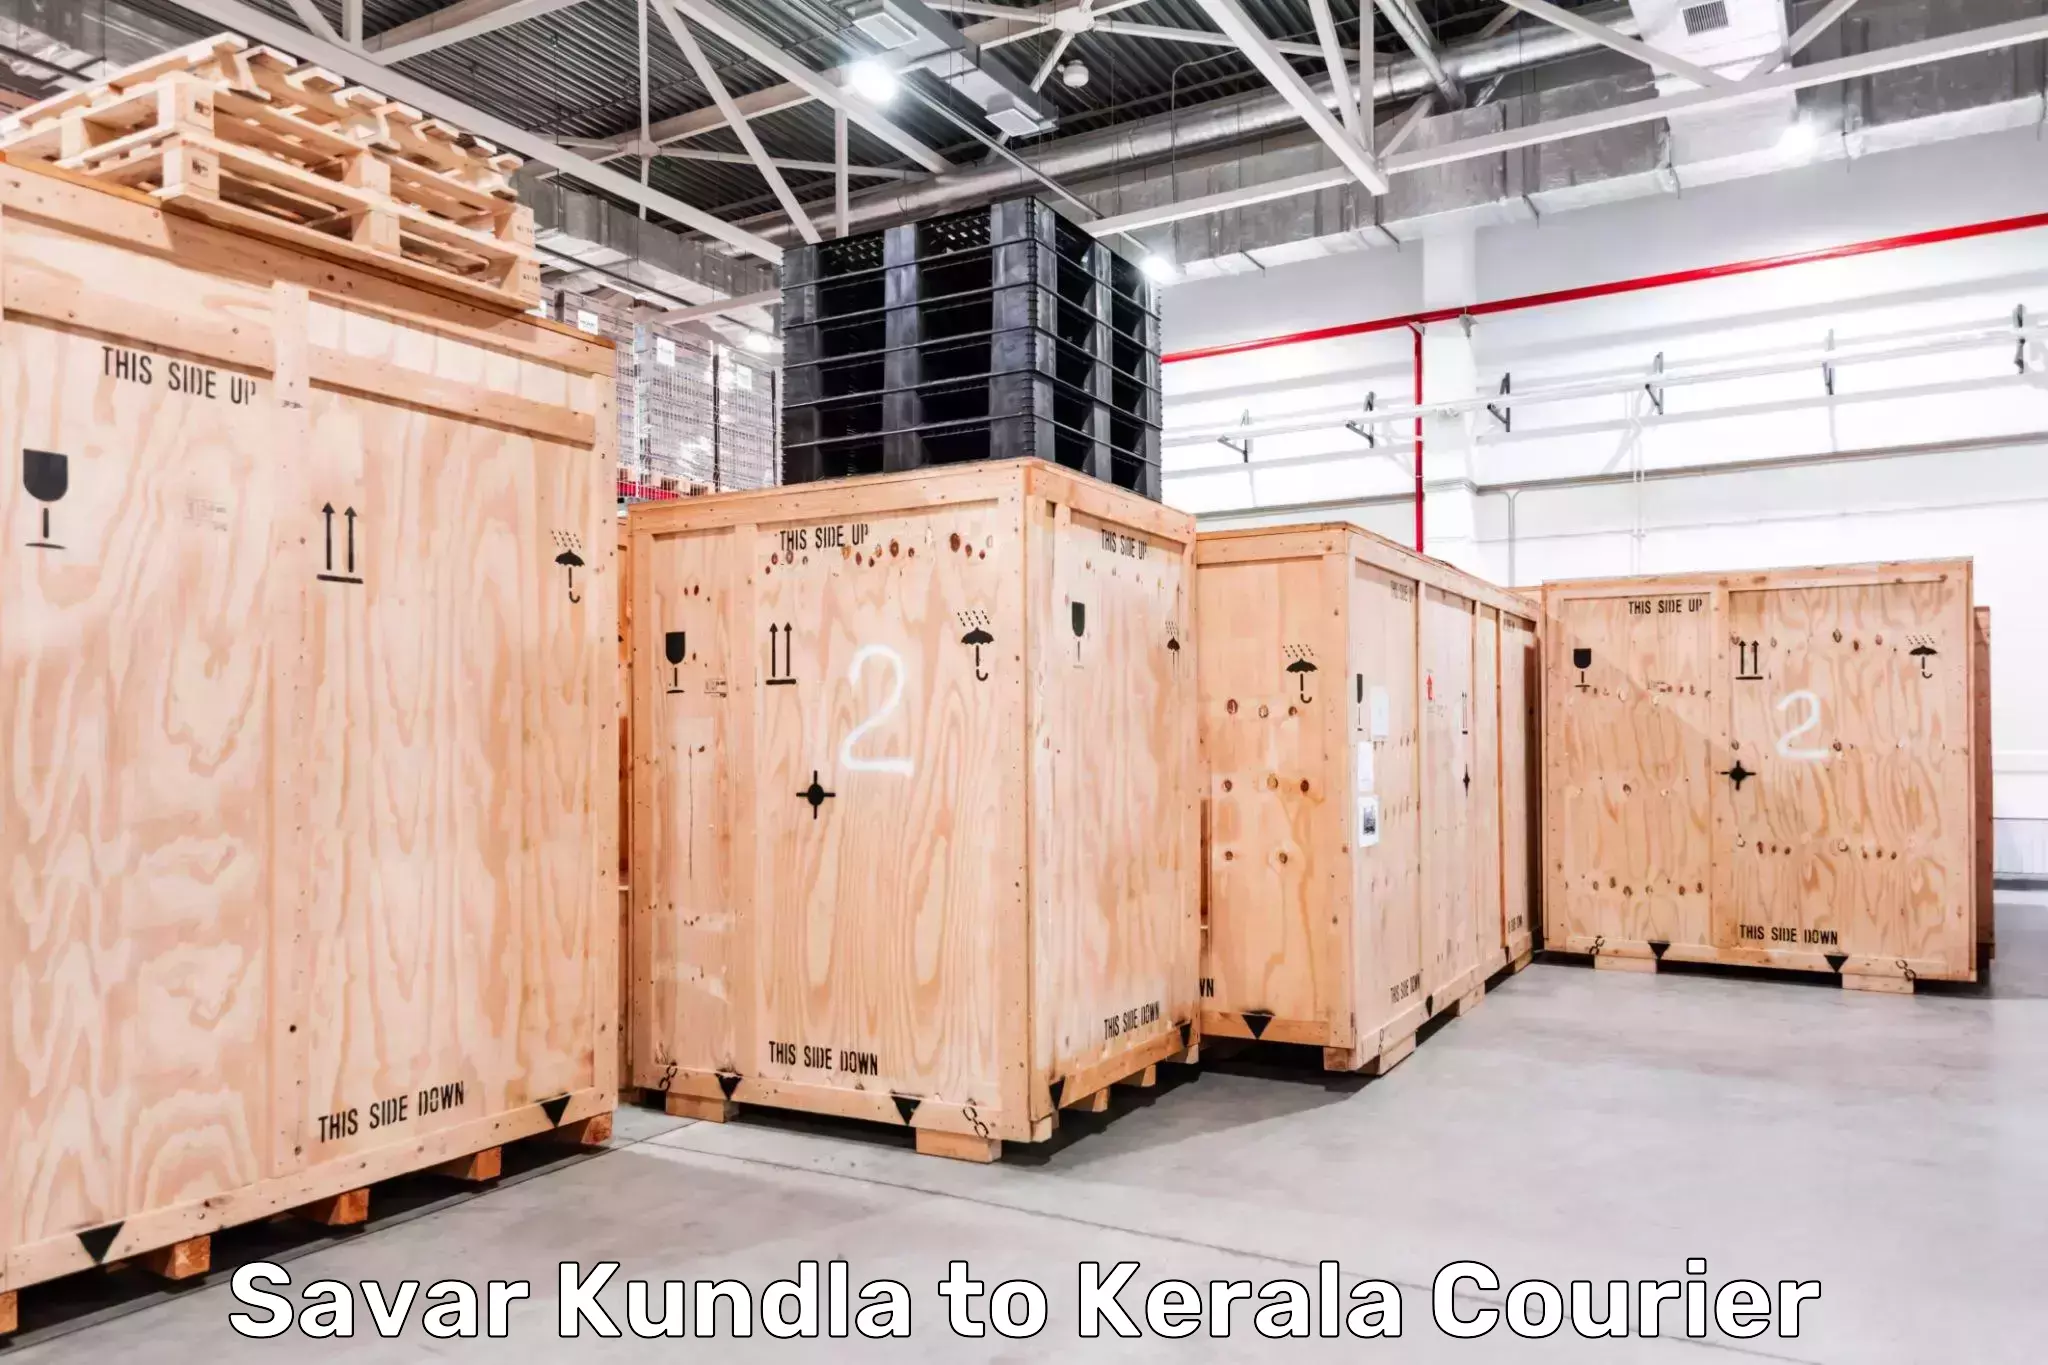 Package consolidation Savar Kundla to Thamarassery